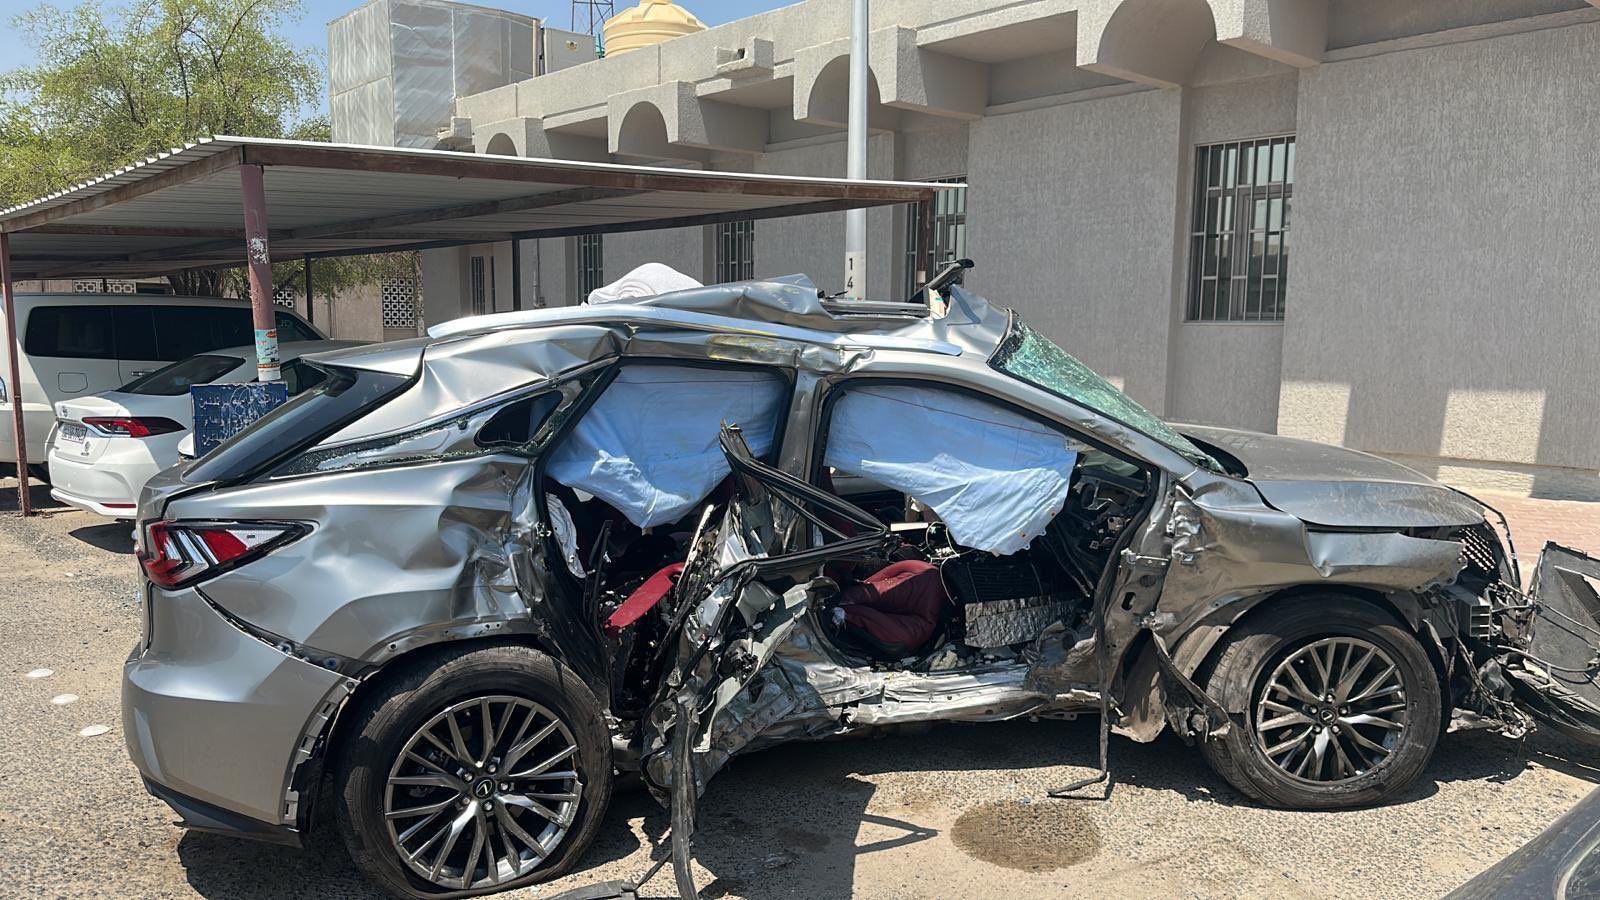 السيارة التي صدمتها فاطمة المؤمن وكان بداخلها 5 أشخاص، توفي اثنان وإصابة ثلاث في العناية المركزة - المصدر: شبكة الكويت